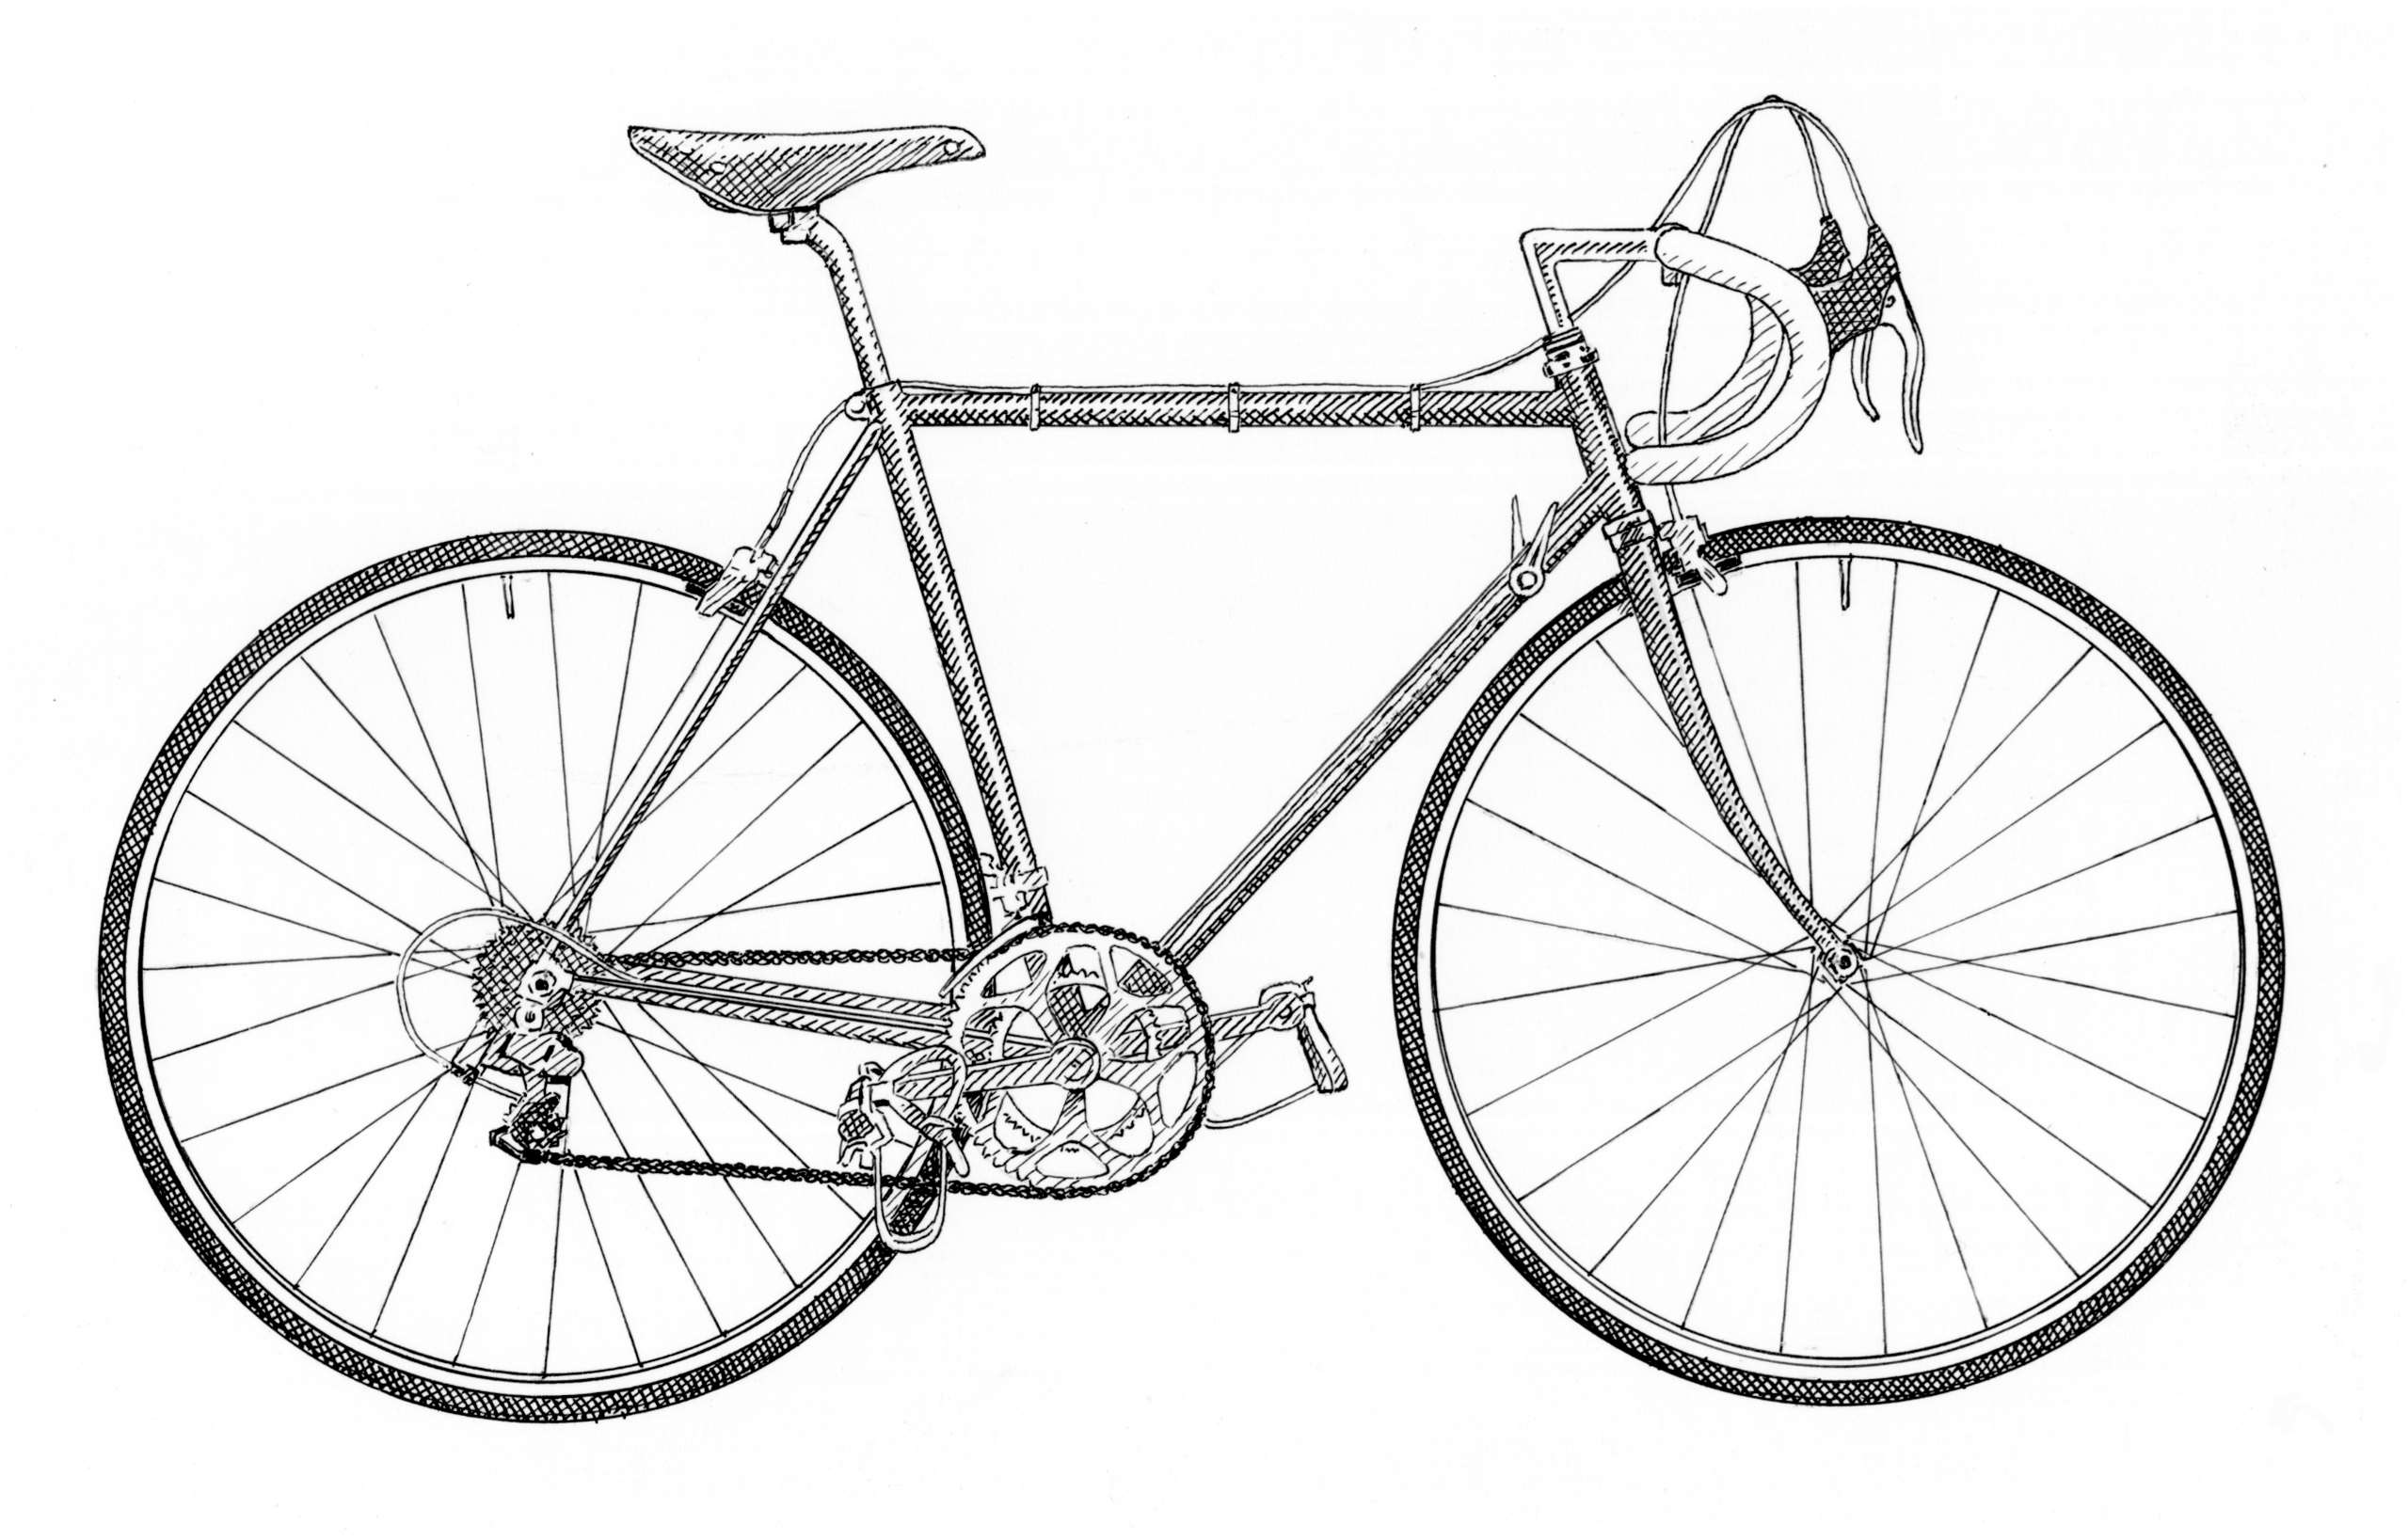 Revised Bike aw_new.jpg